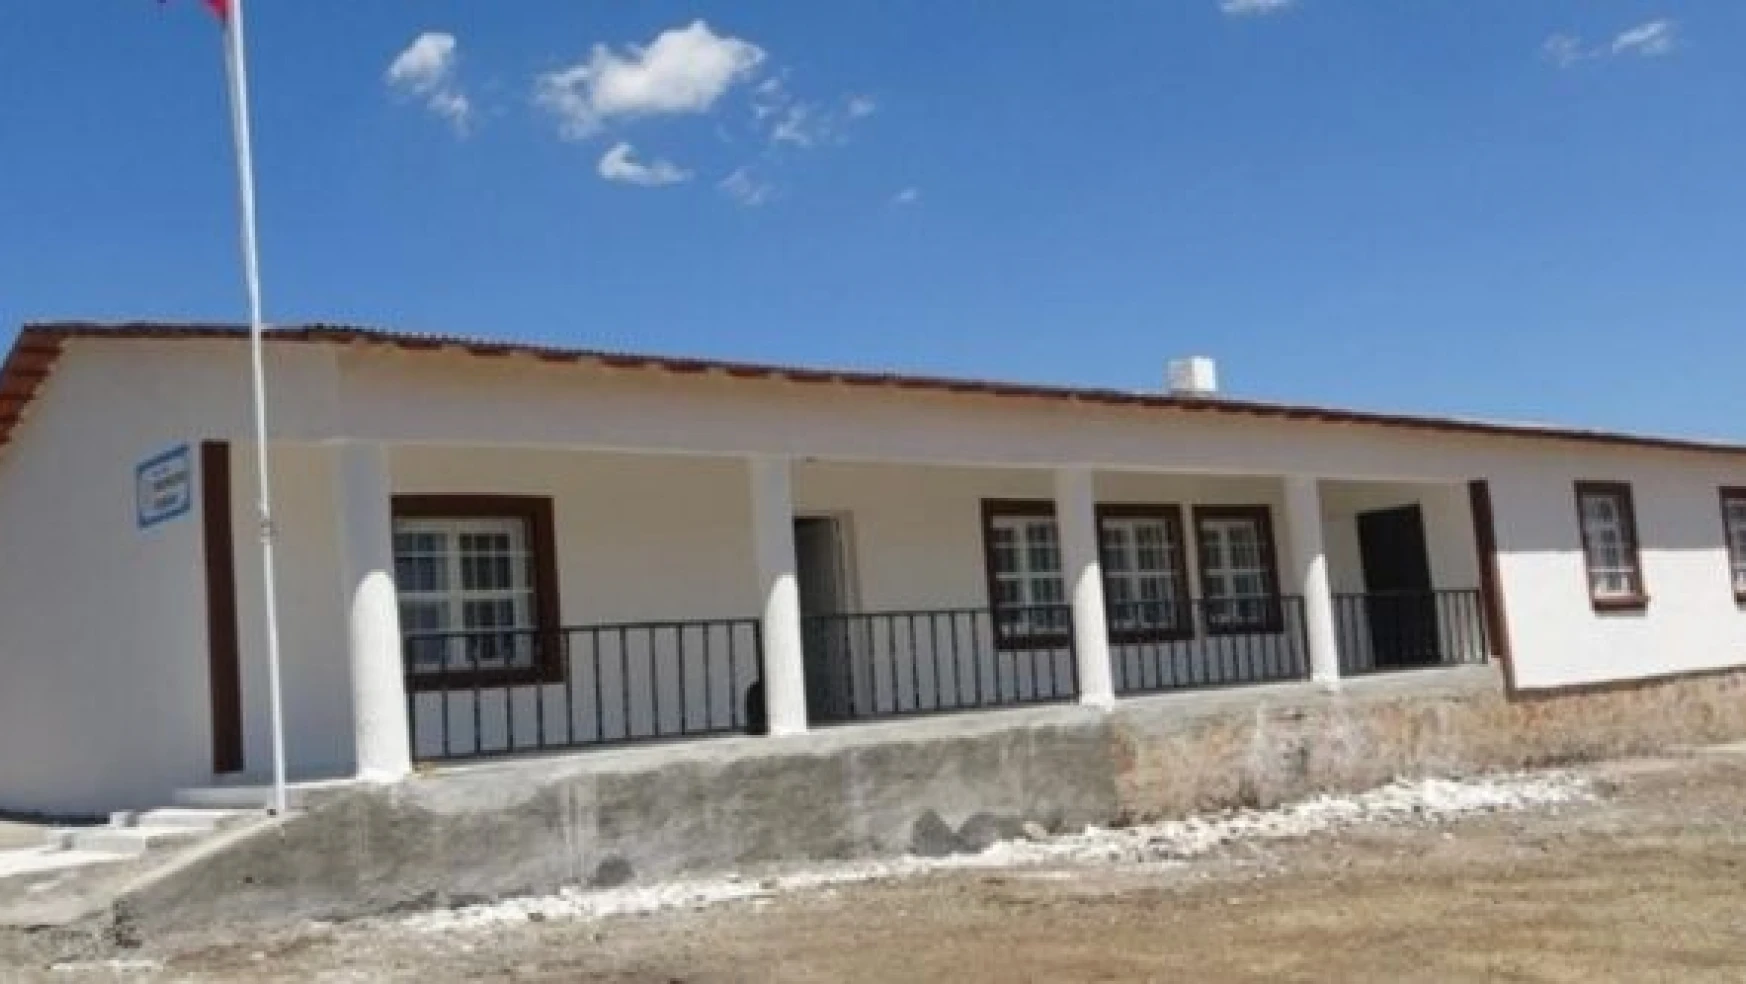 Köy Yaşam Merkezi Bingöl'e hayat kattı